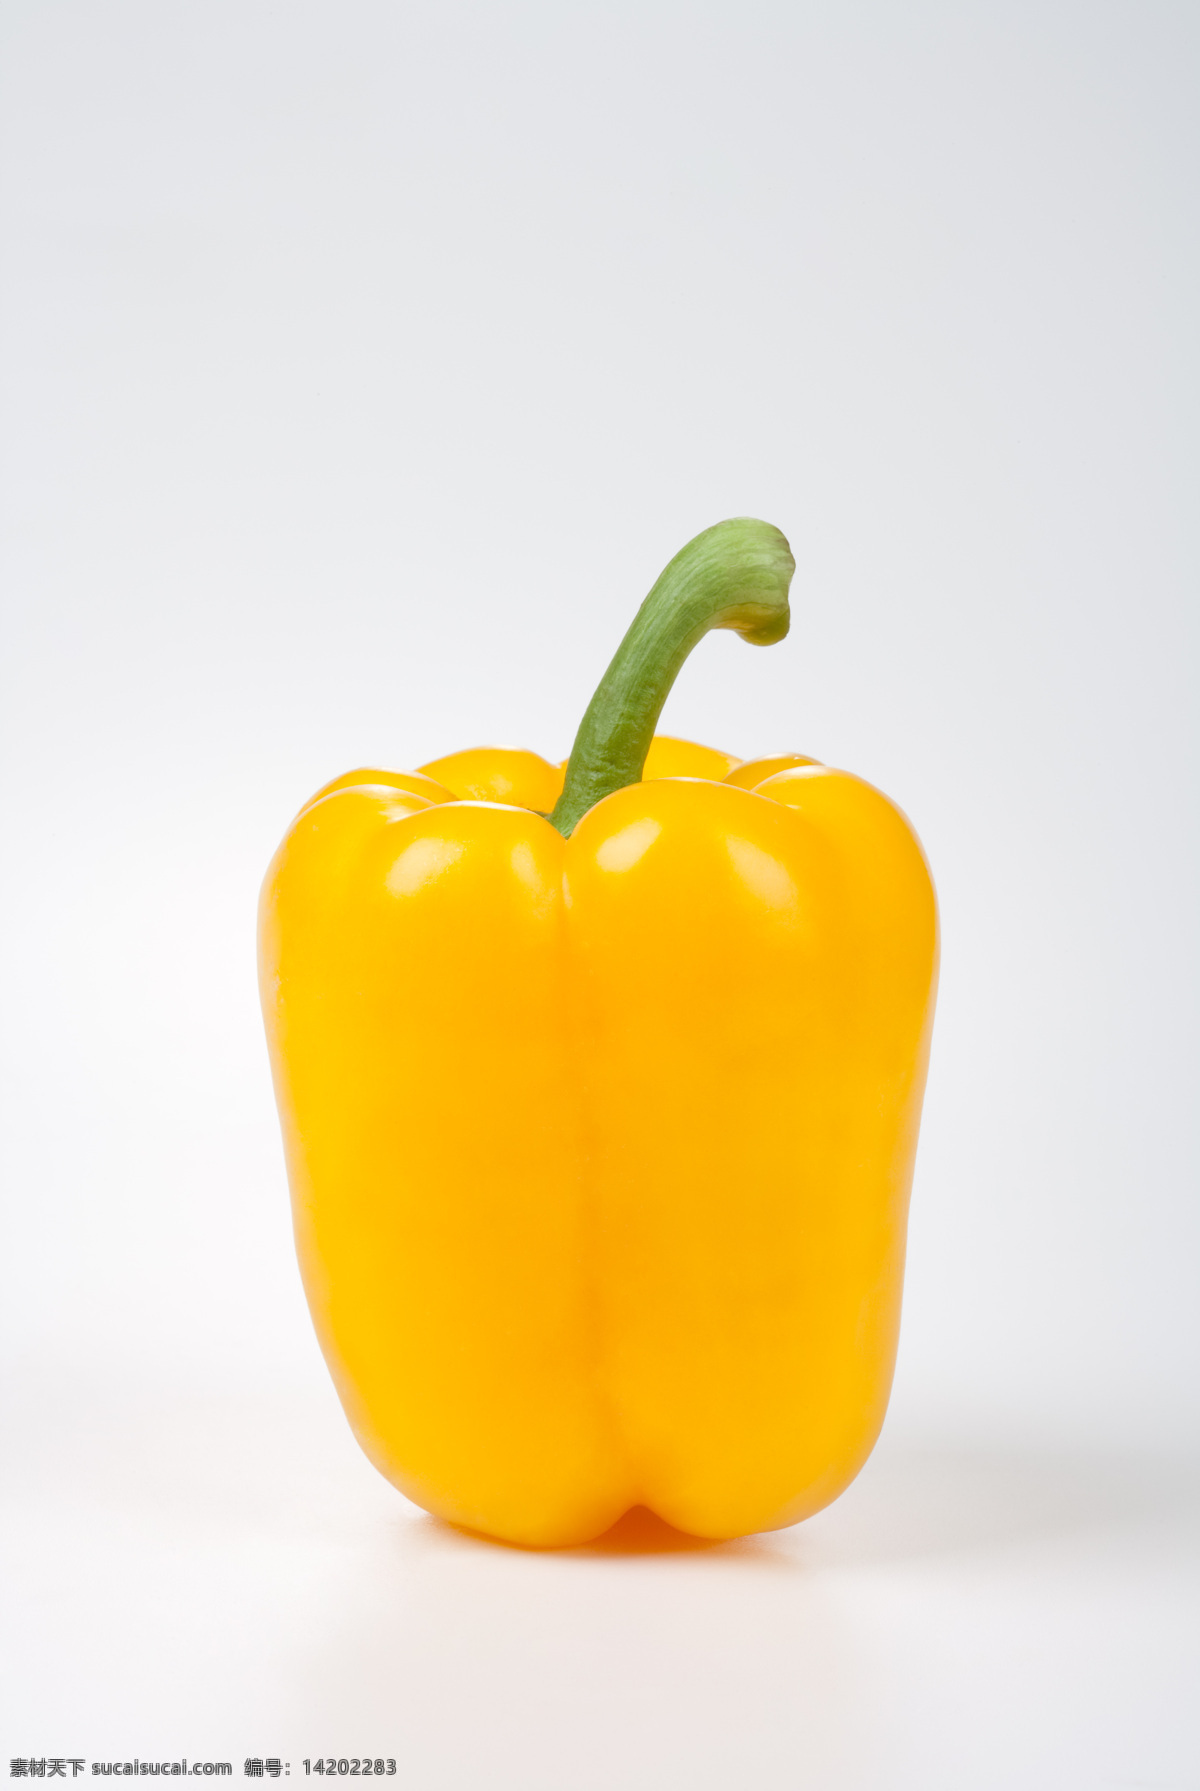 黄辣椒 食物写真 餐饮美食 食物原料 新鲜食物 新鲜 食物 食品 青椒 蔬菜 生物世界